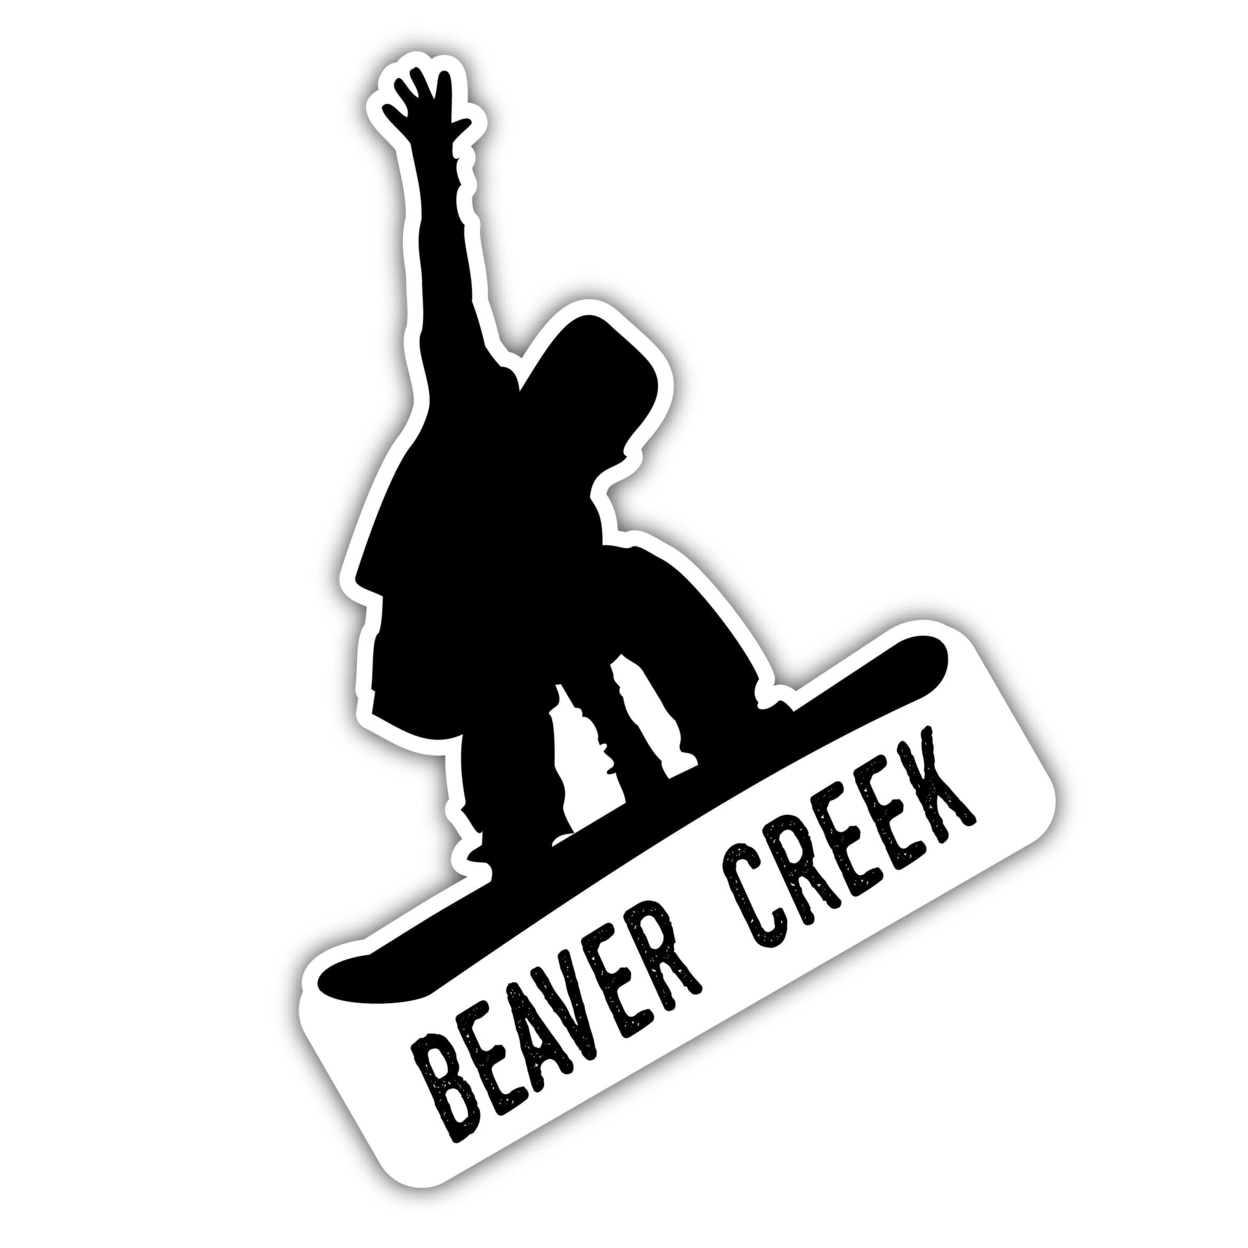 Beaver Creek Colorado Ski Adventures Souvenir 4 Inch Vinyl Decal Sticker Mountain Design